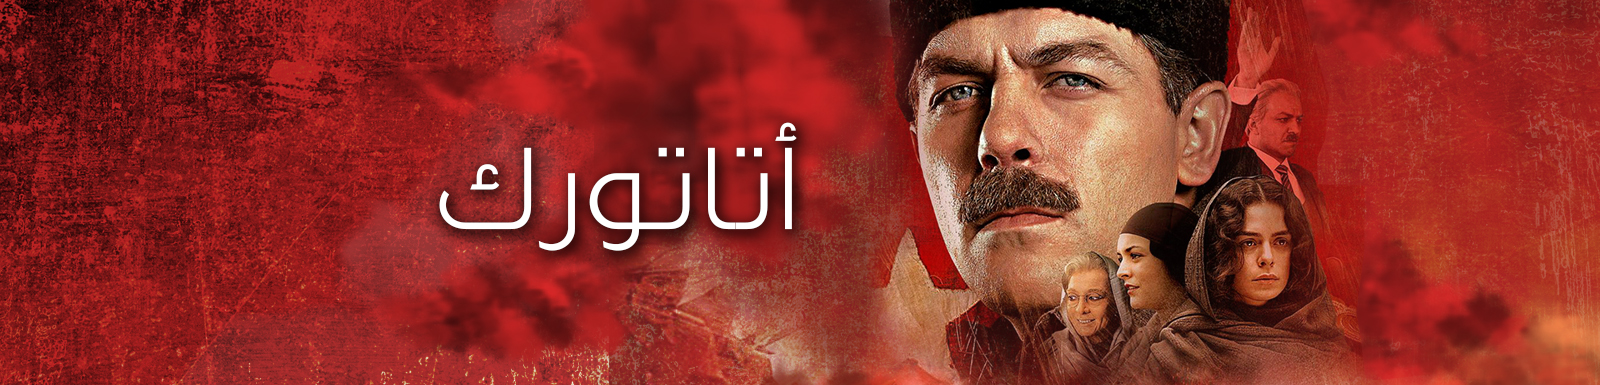 مشاهدة وتحميل مسلسل أتاتورك الحلقة 1 الأولى 2015 كاملة